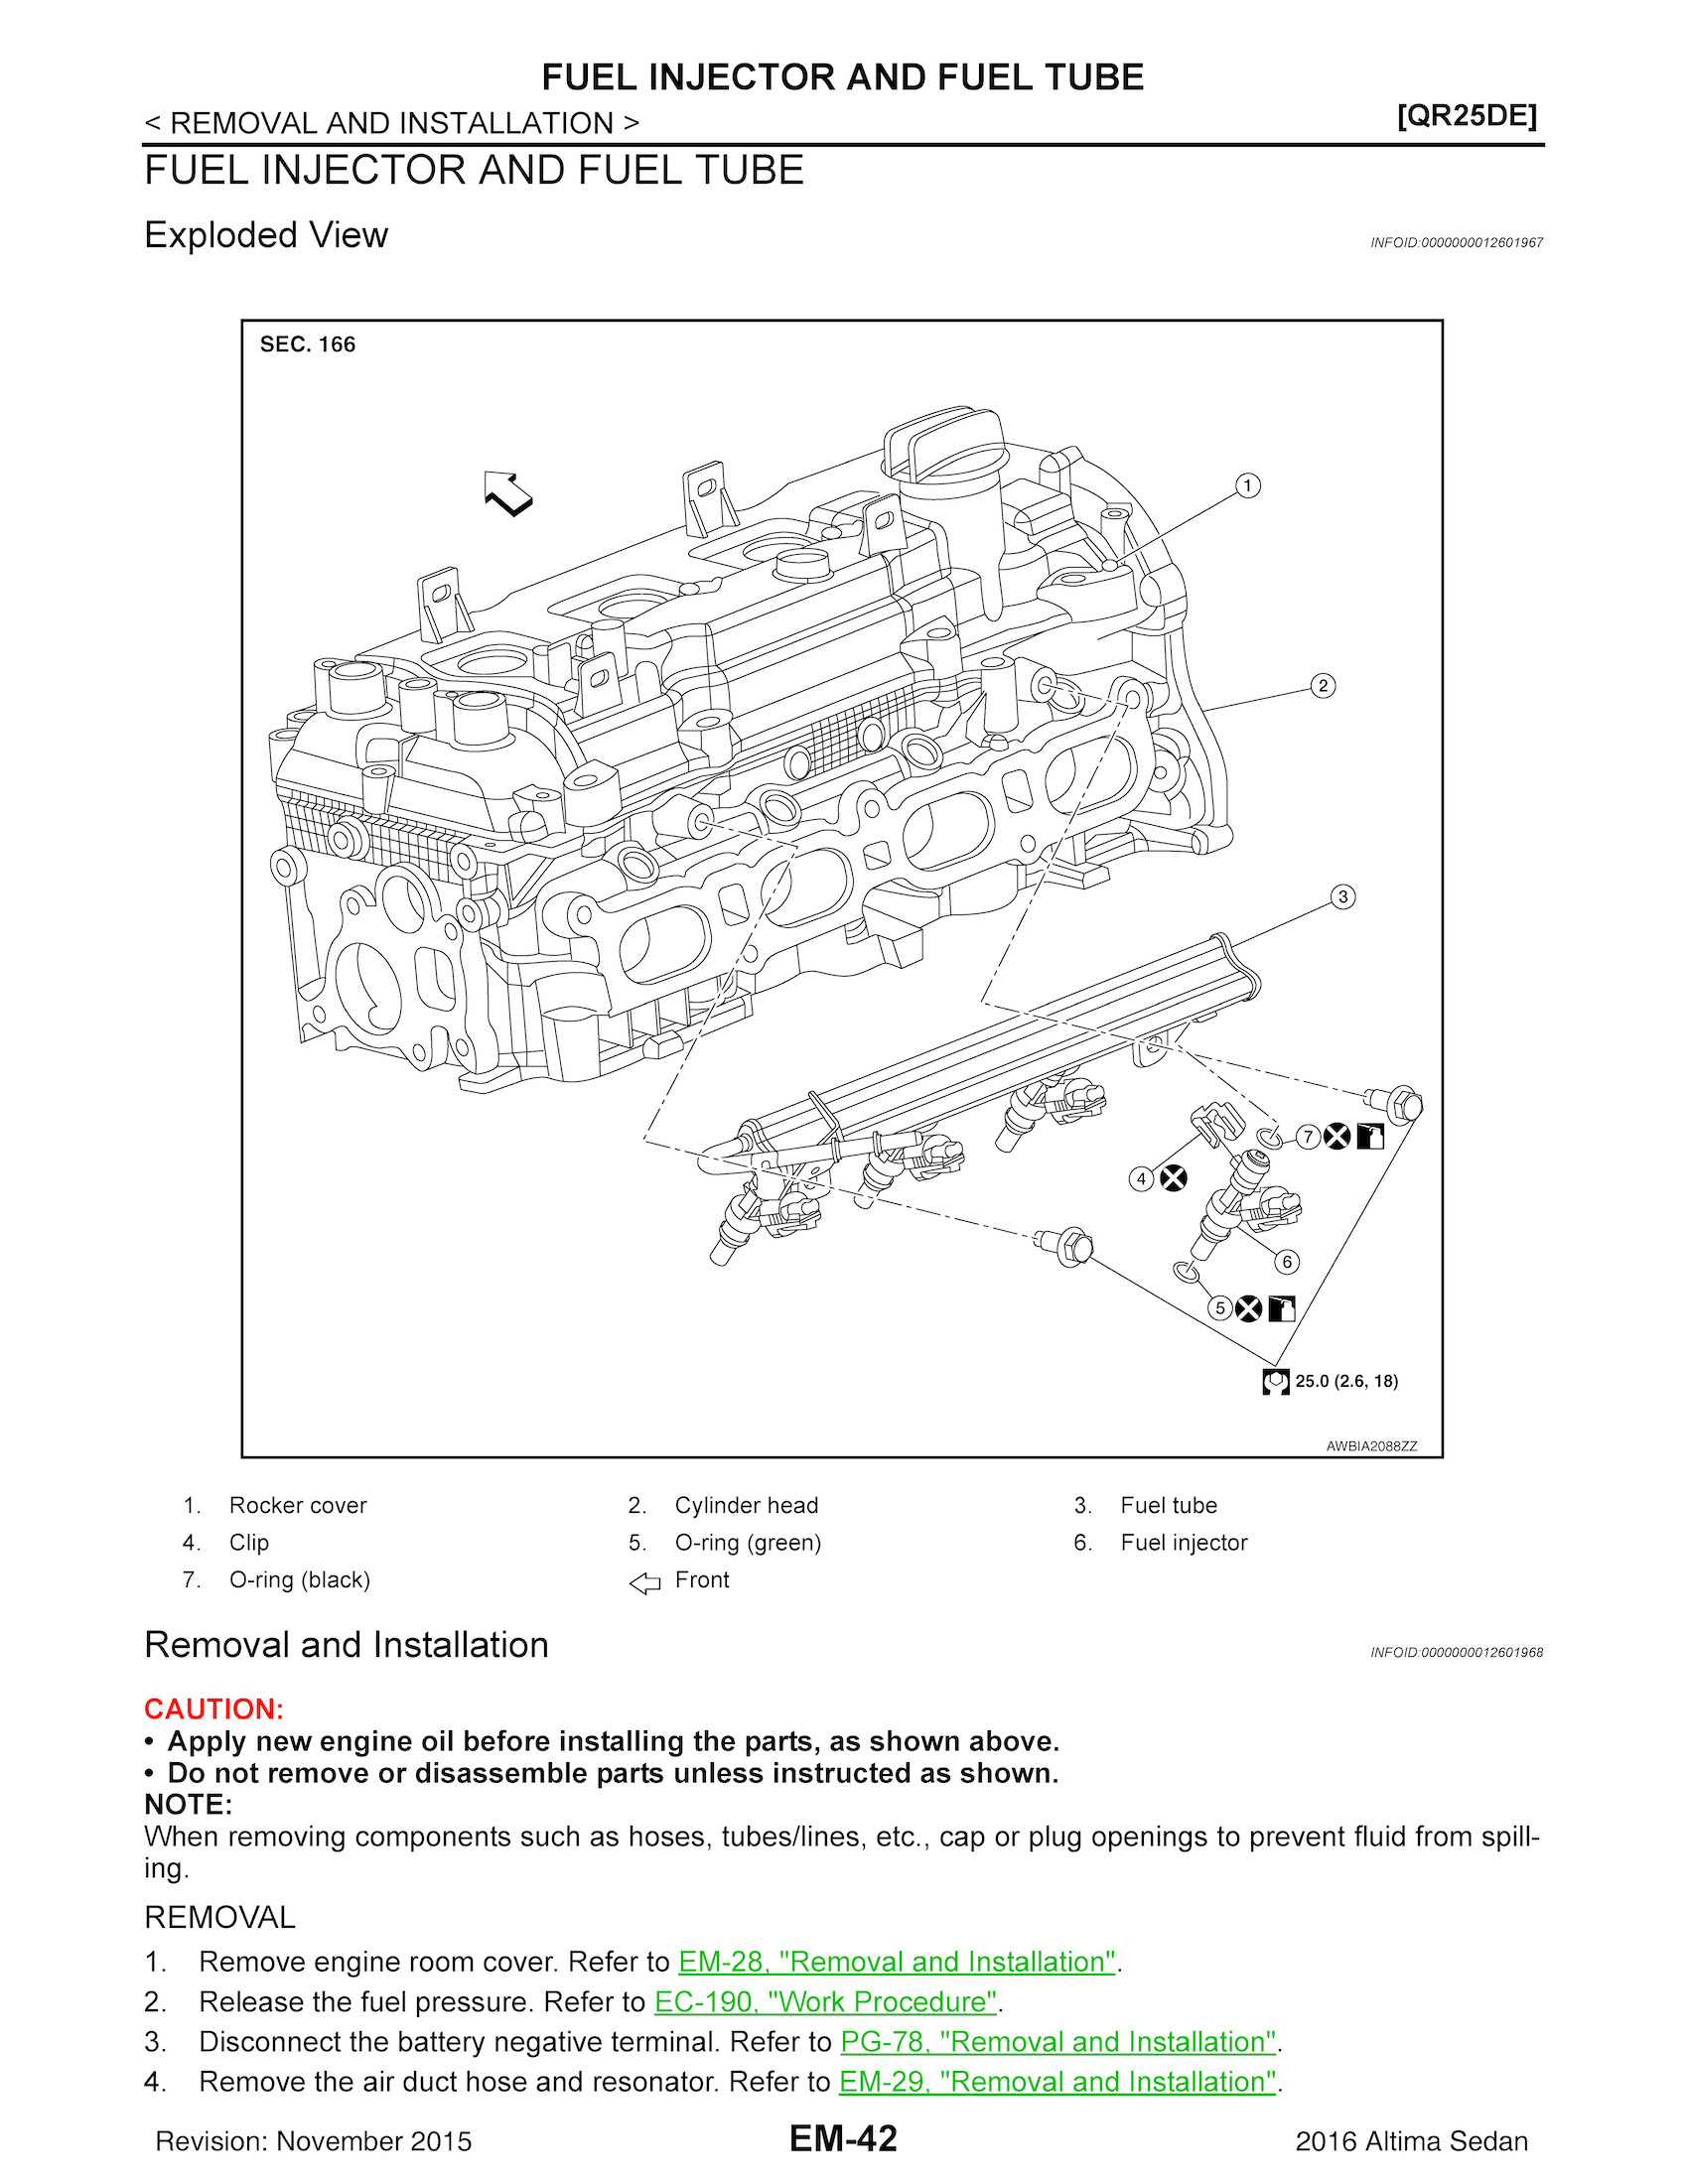 2016 Nissan Altima Repair Manual, Fule Injector and Fule Tube